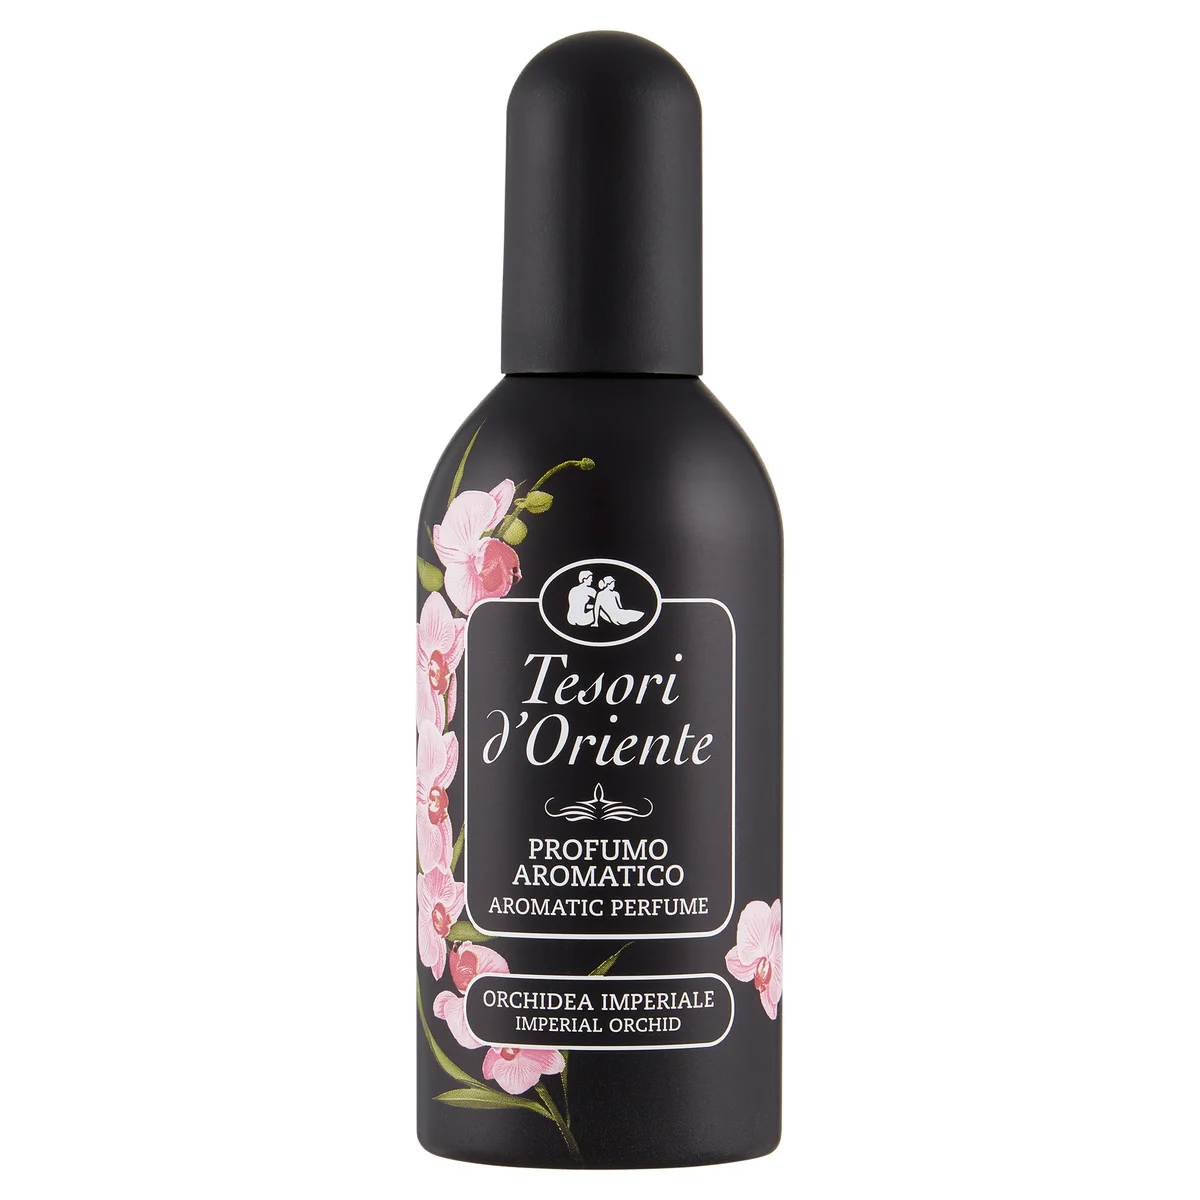 Tesori d'Oriente Orchidea della Cina aromatic perfume 100 ml